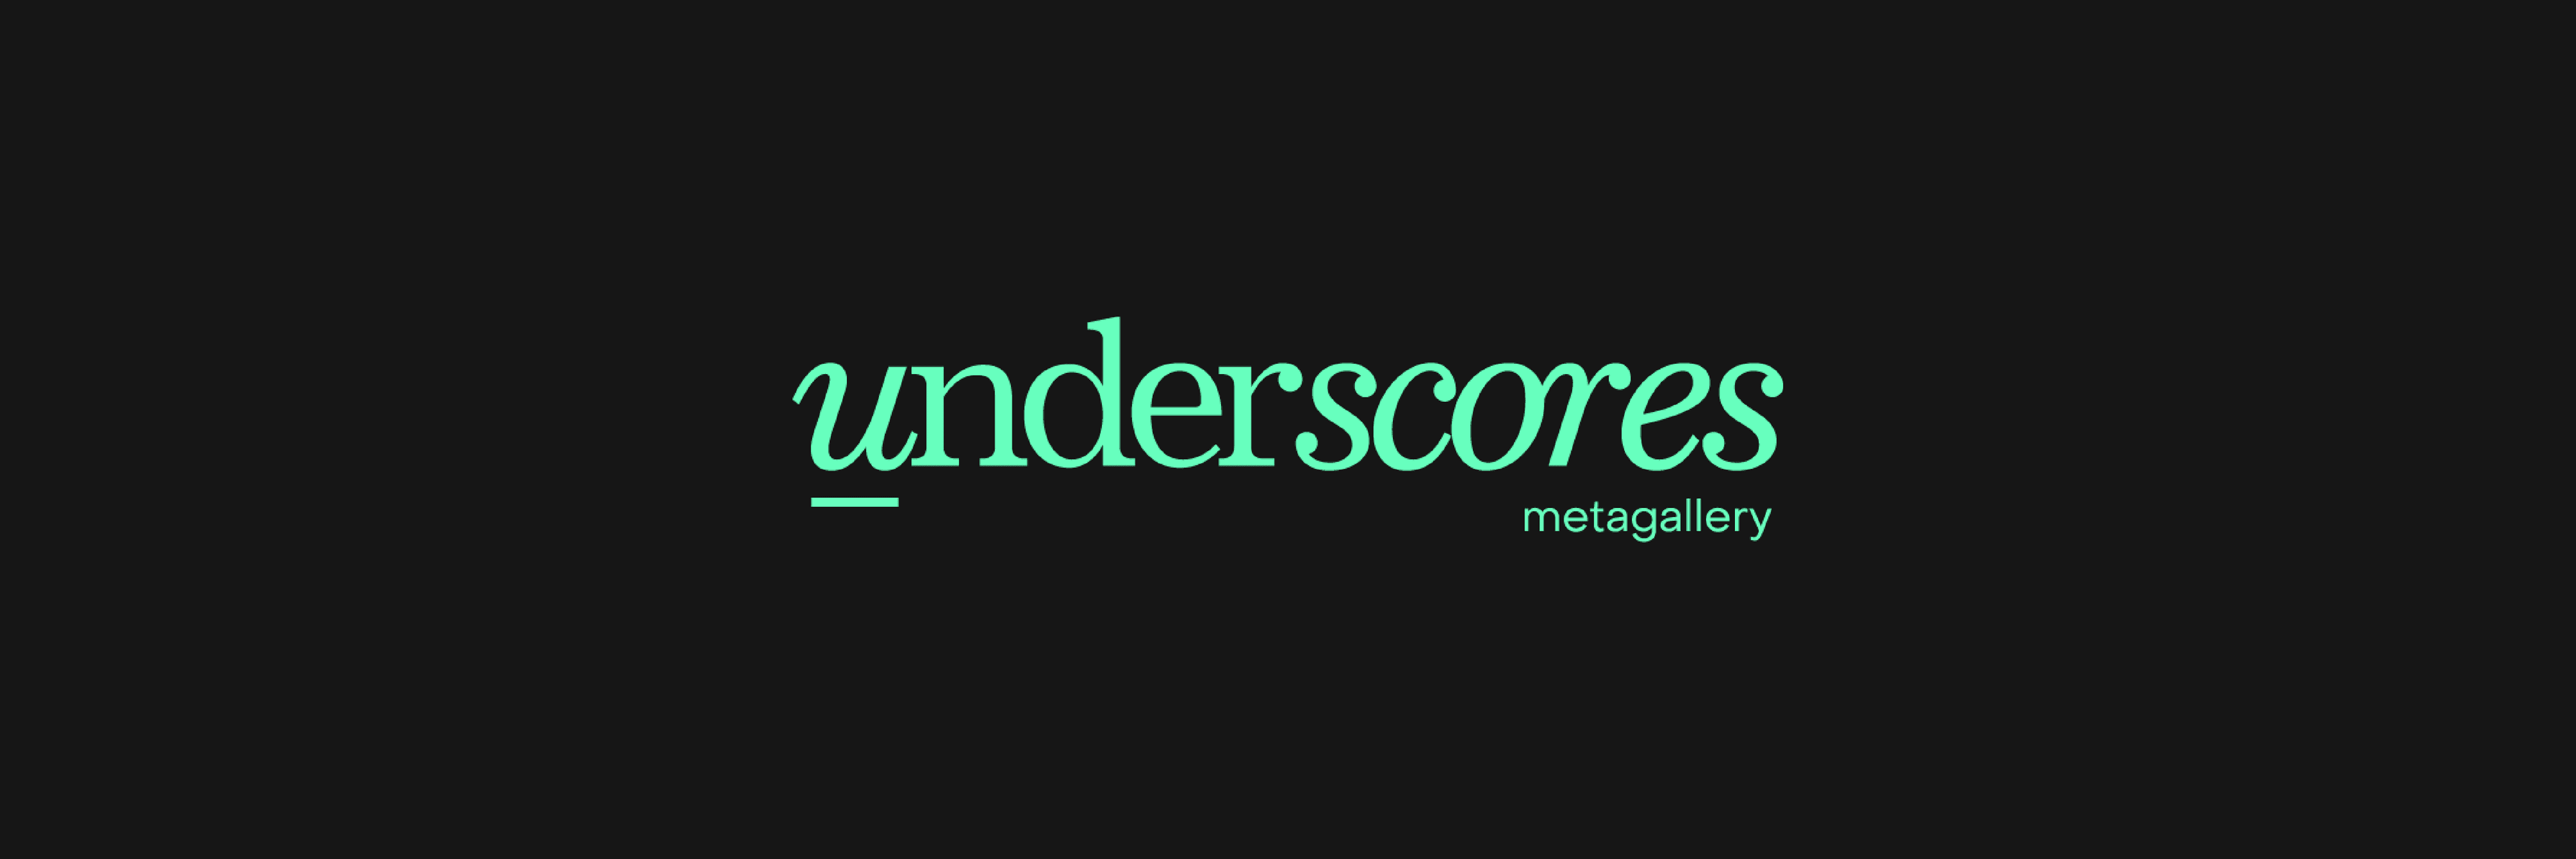 UnderscoresLAB banner